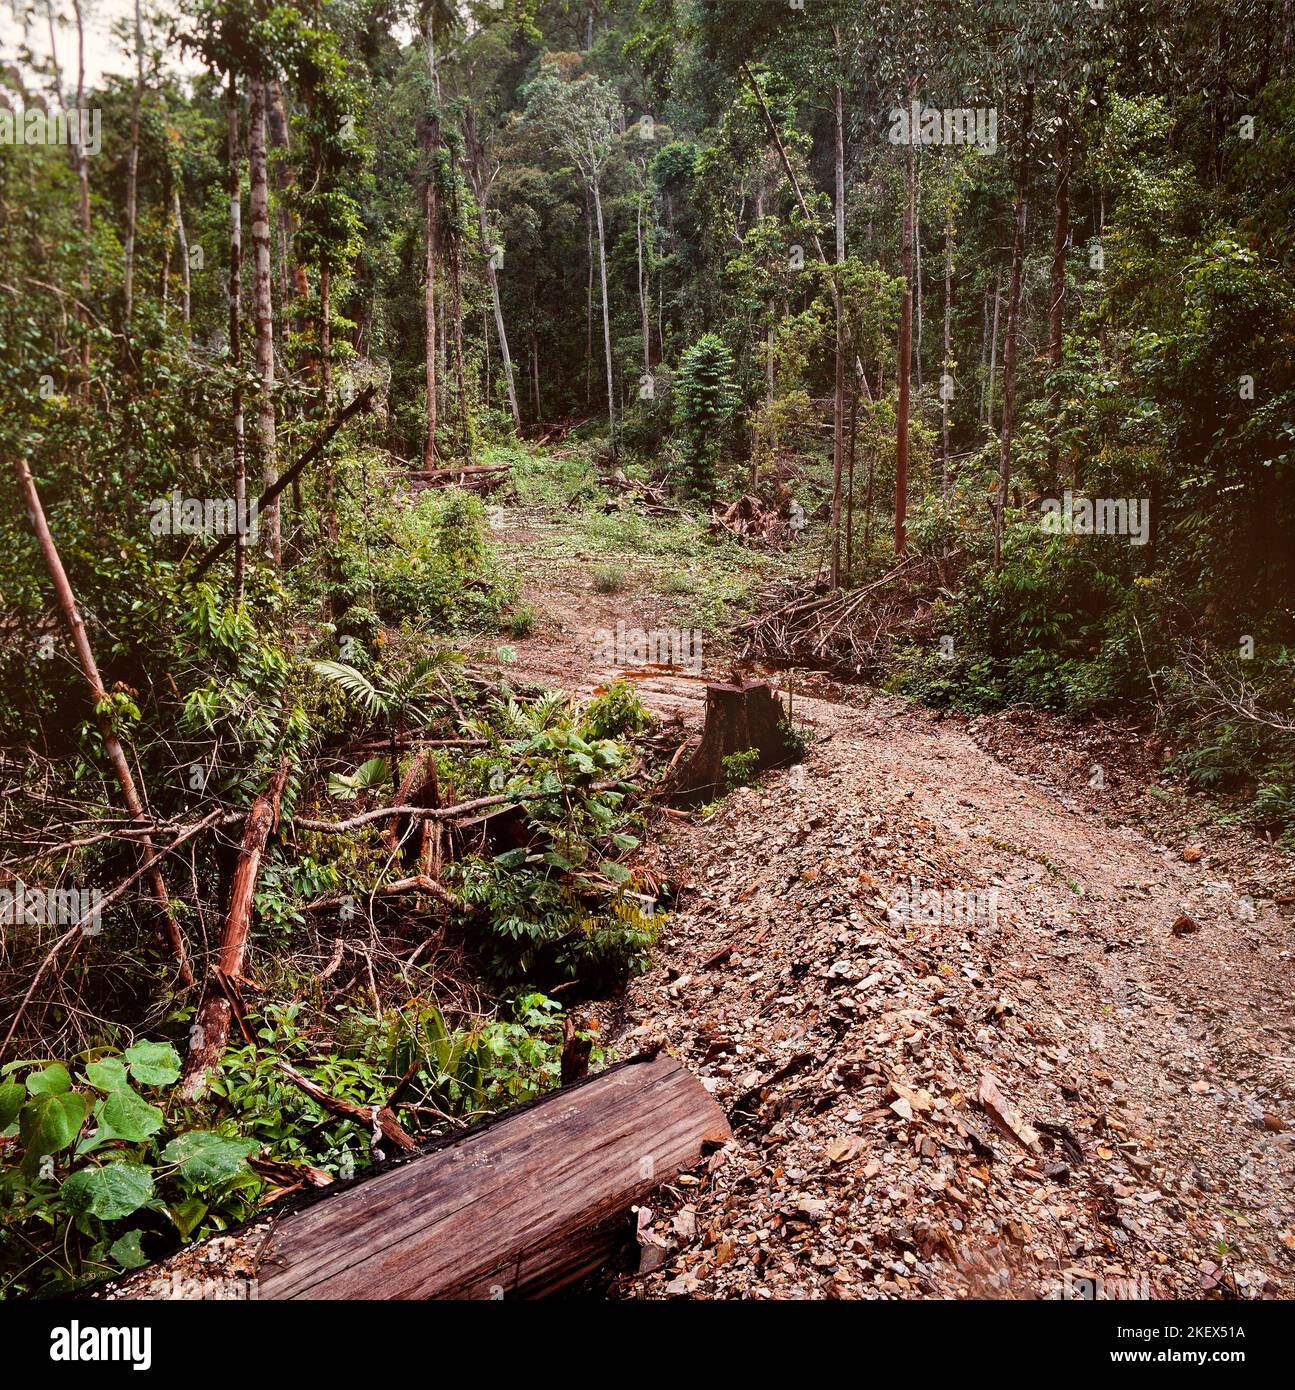 Exploitation forestière illégale, limite du parc national de Mulu, Sarawak, Bornéo, 1982 Banque D'Images